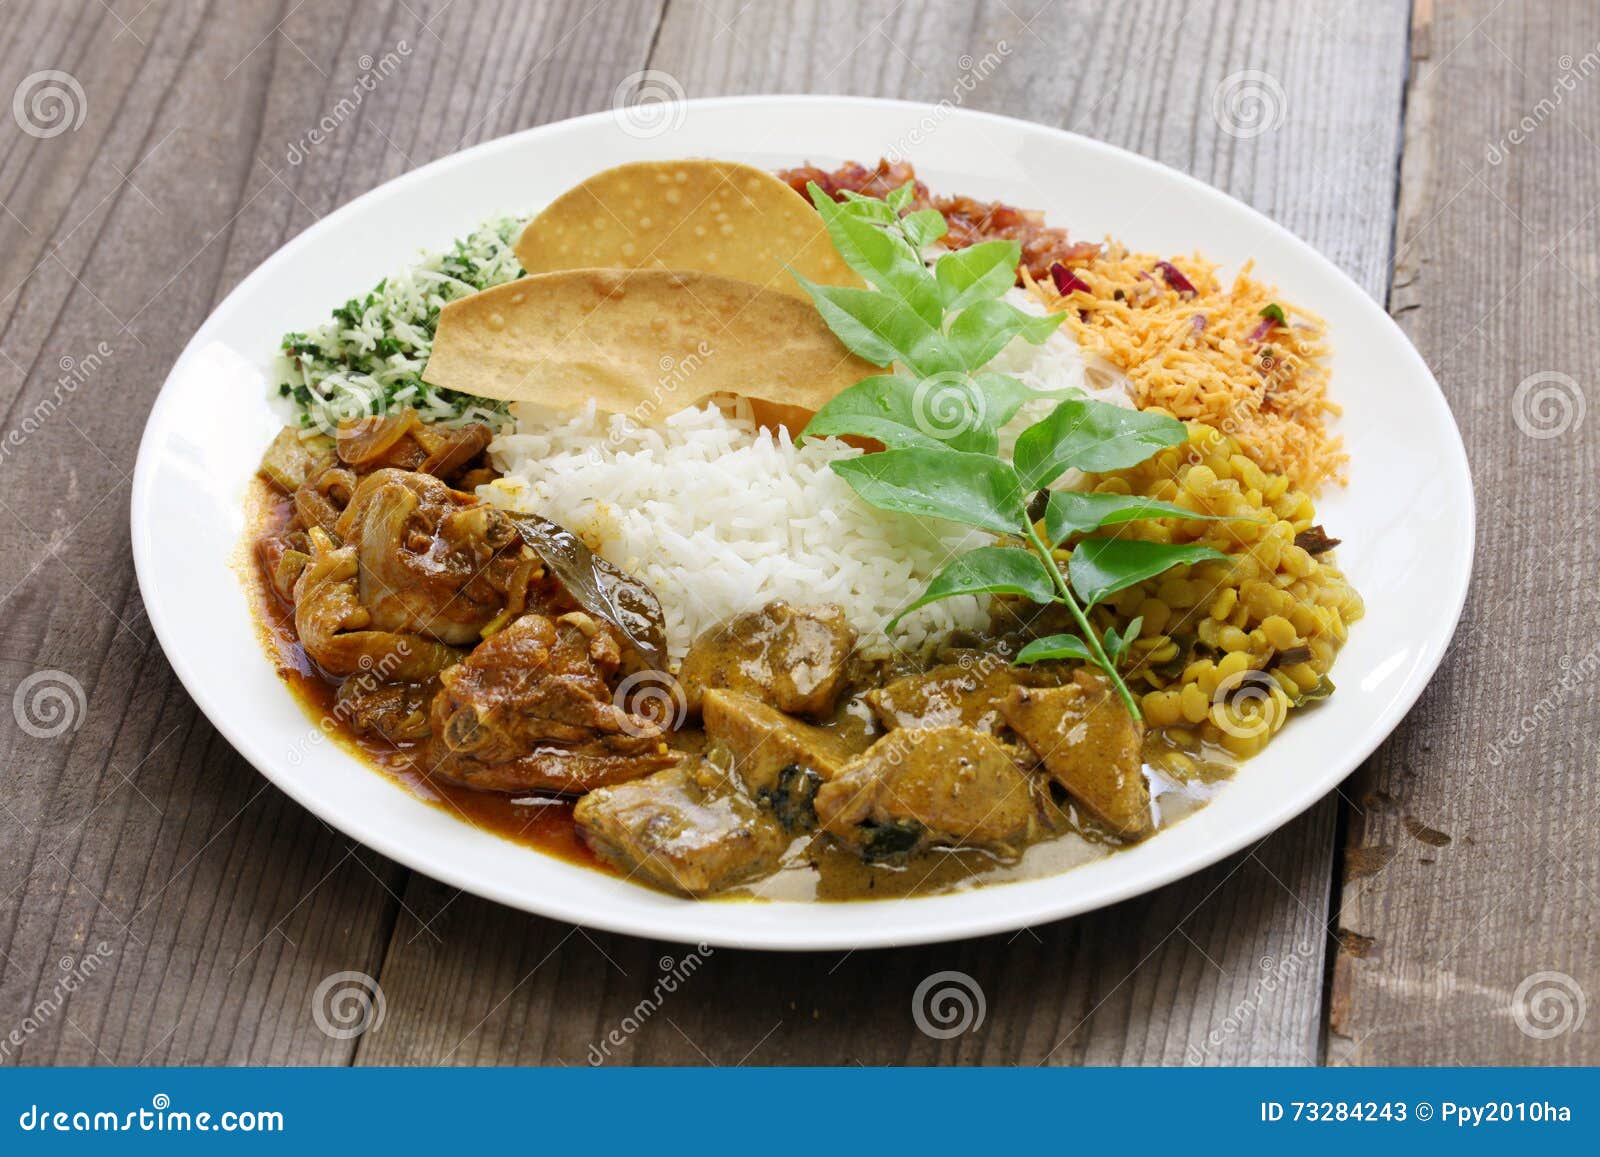 sri lankan rice and curry dish